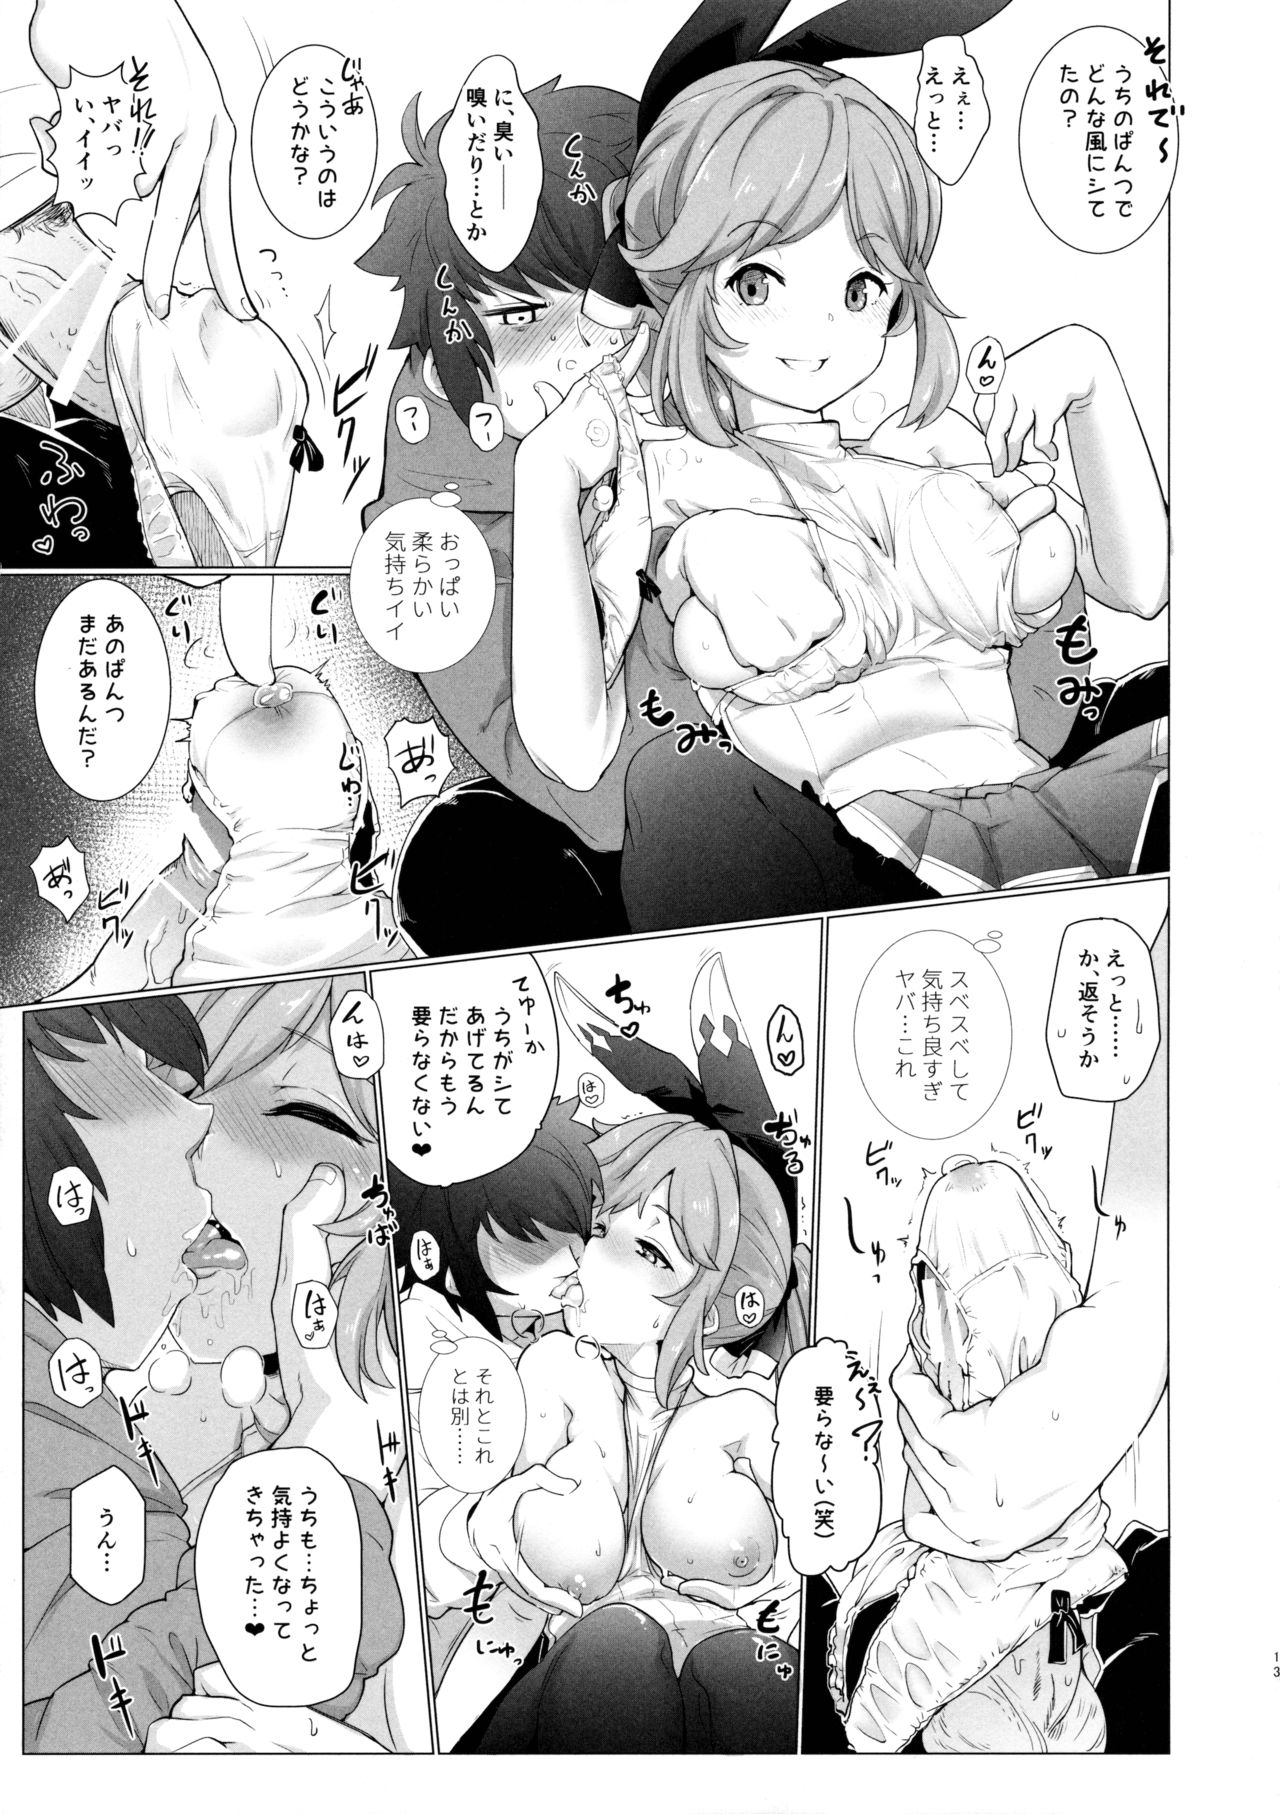 (Fata Grande Kikuusai 2) [*Cherish* (Nishimura Nike)] Cheri_Cherie (Granblue Fantasy) page 13 full